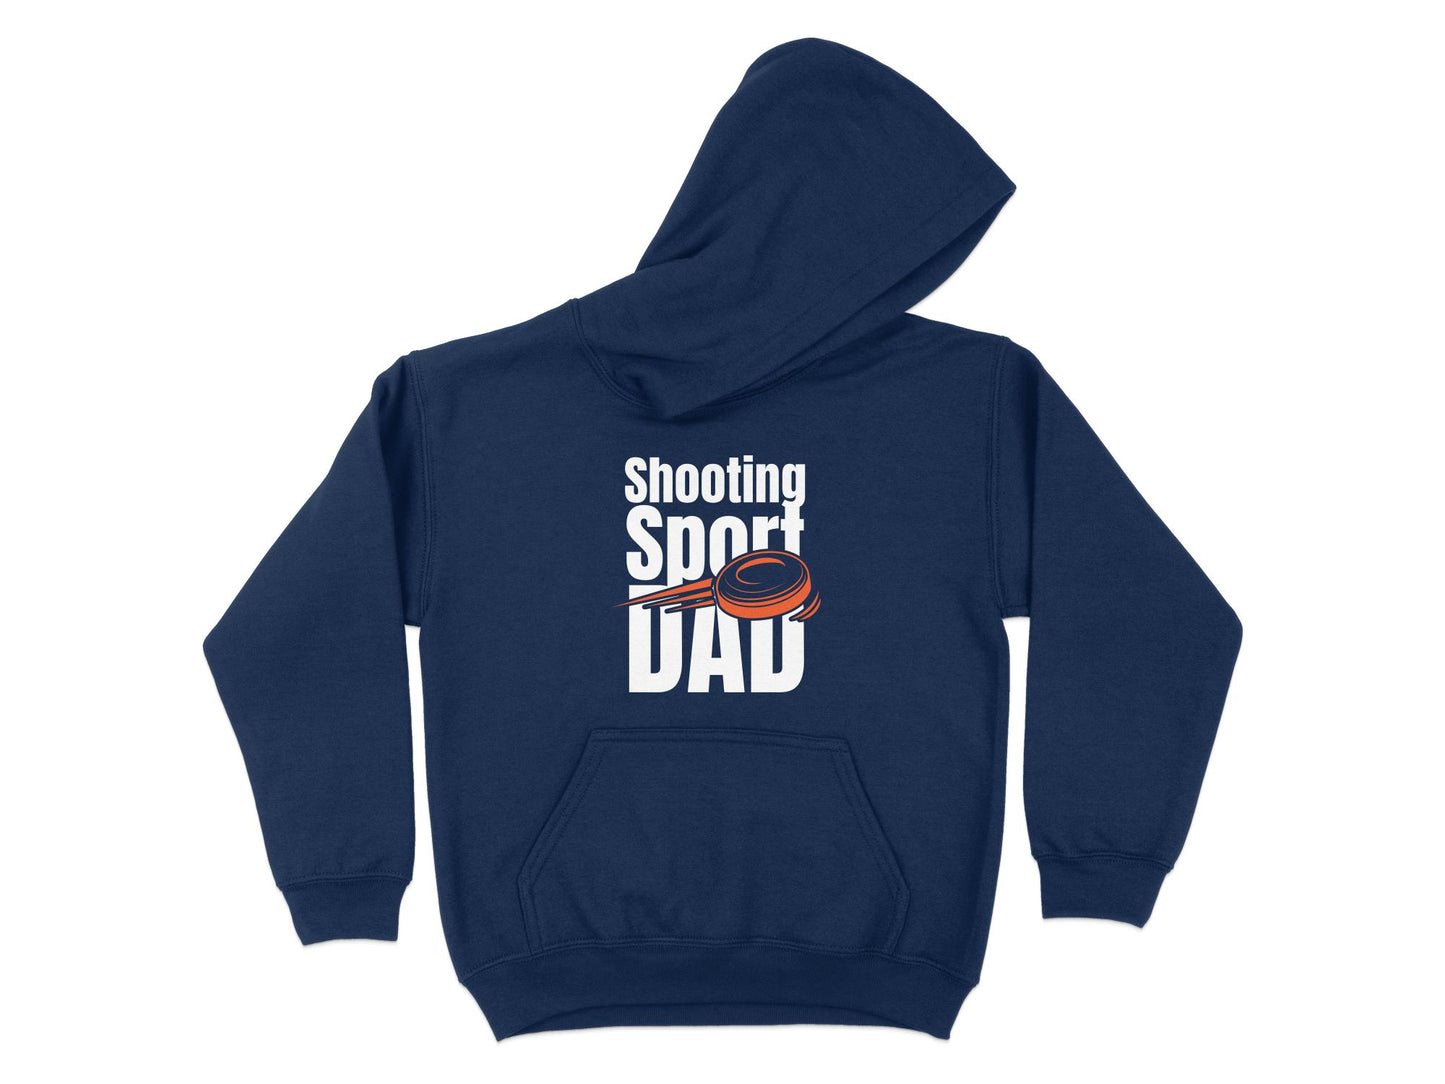 Trap Shooting hoodie - Sport Shooting Dad, navy blue